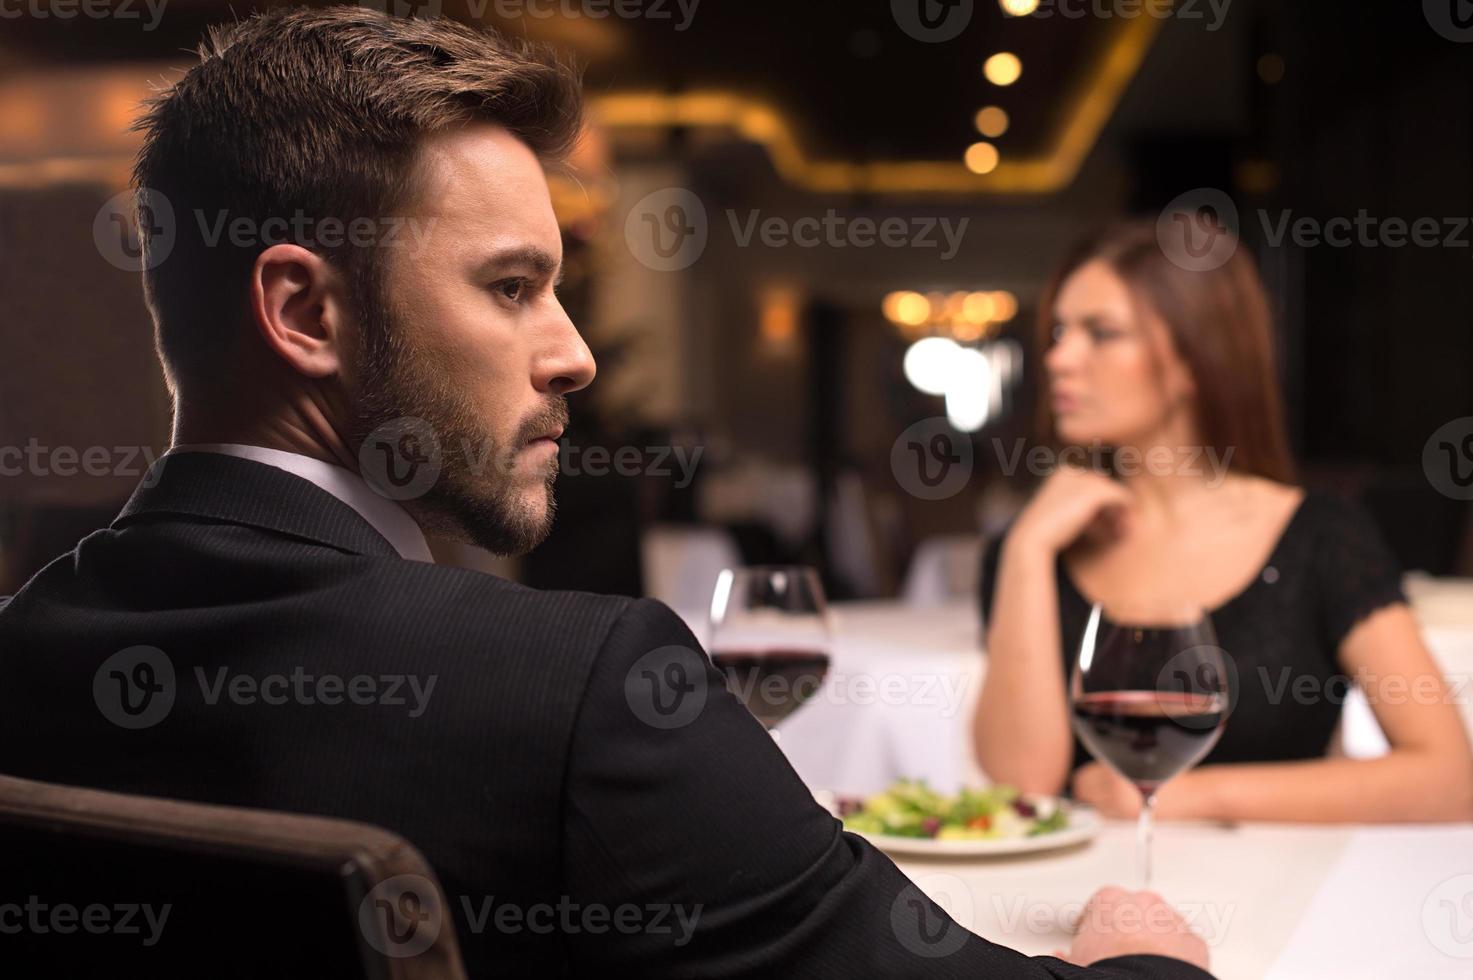 no mas palabras. pareja joven pensativa sentada en el restaurante y mirando hacia otro lado foto